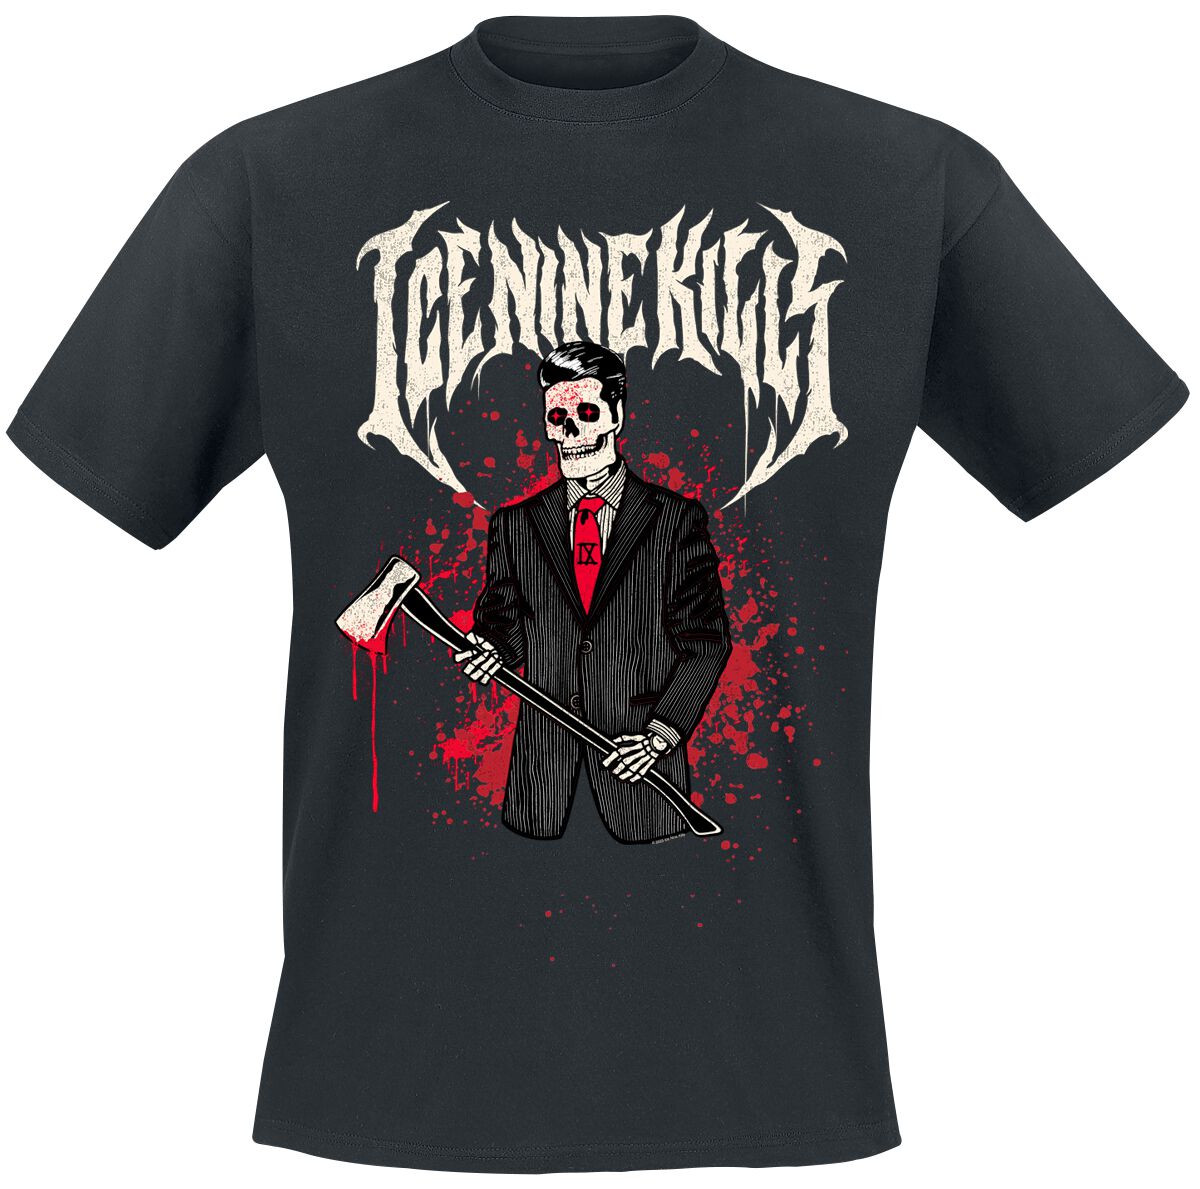 Ice Nine Kills T-Shirt - Spencer Axe - S bis 4XL - für Männer - Größe 4XL - schwarz  - Lizenziertes Merchandise!